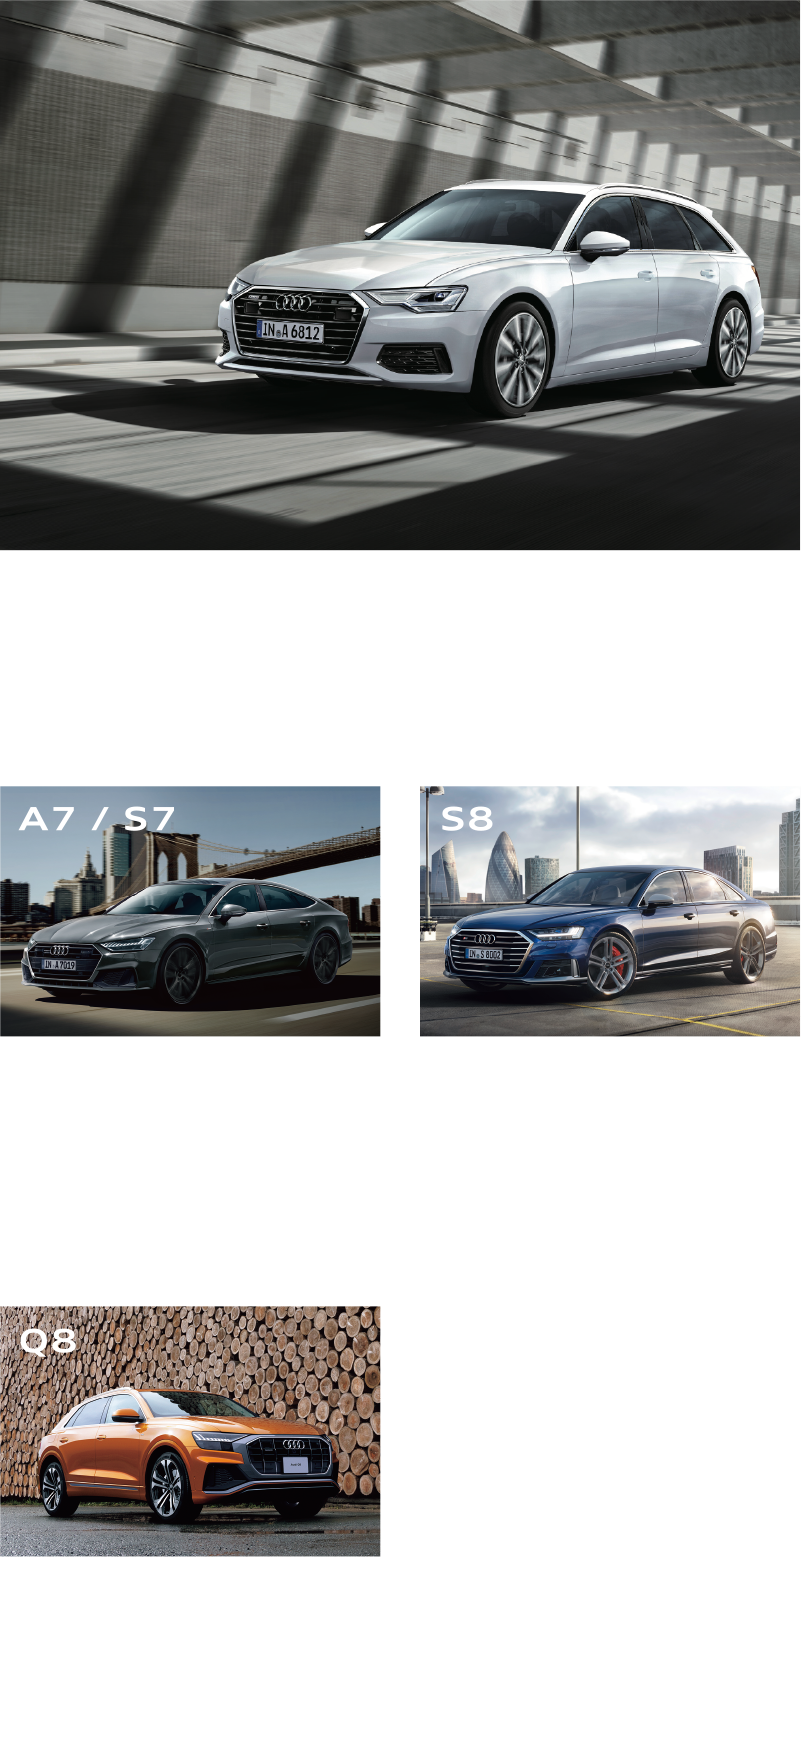 Audi A6 / S6 特別オファー  Audi A7 / S7 特別オファー Audi S8 特別オファー Audi Q8 低金利